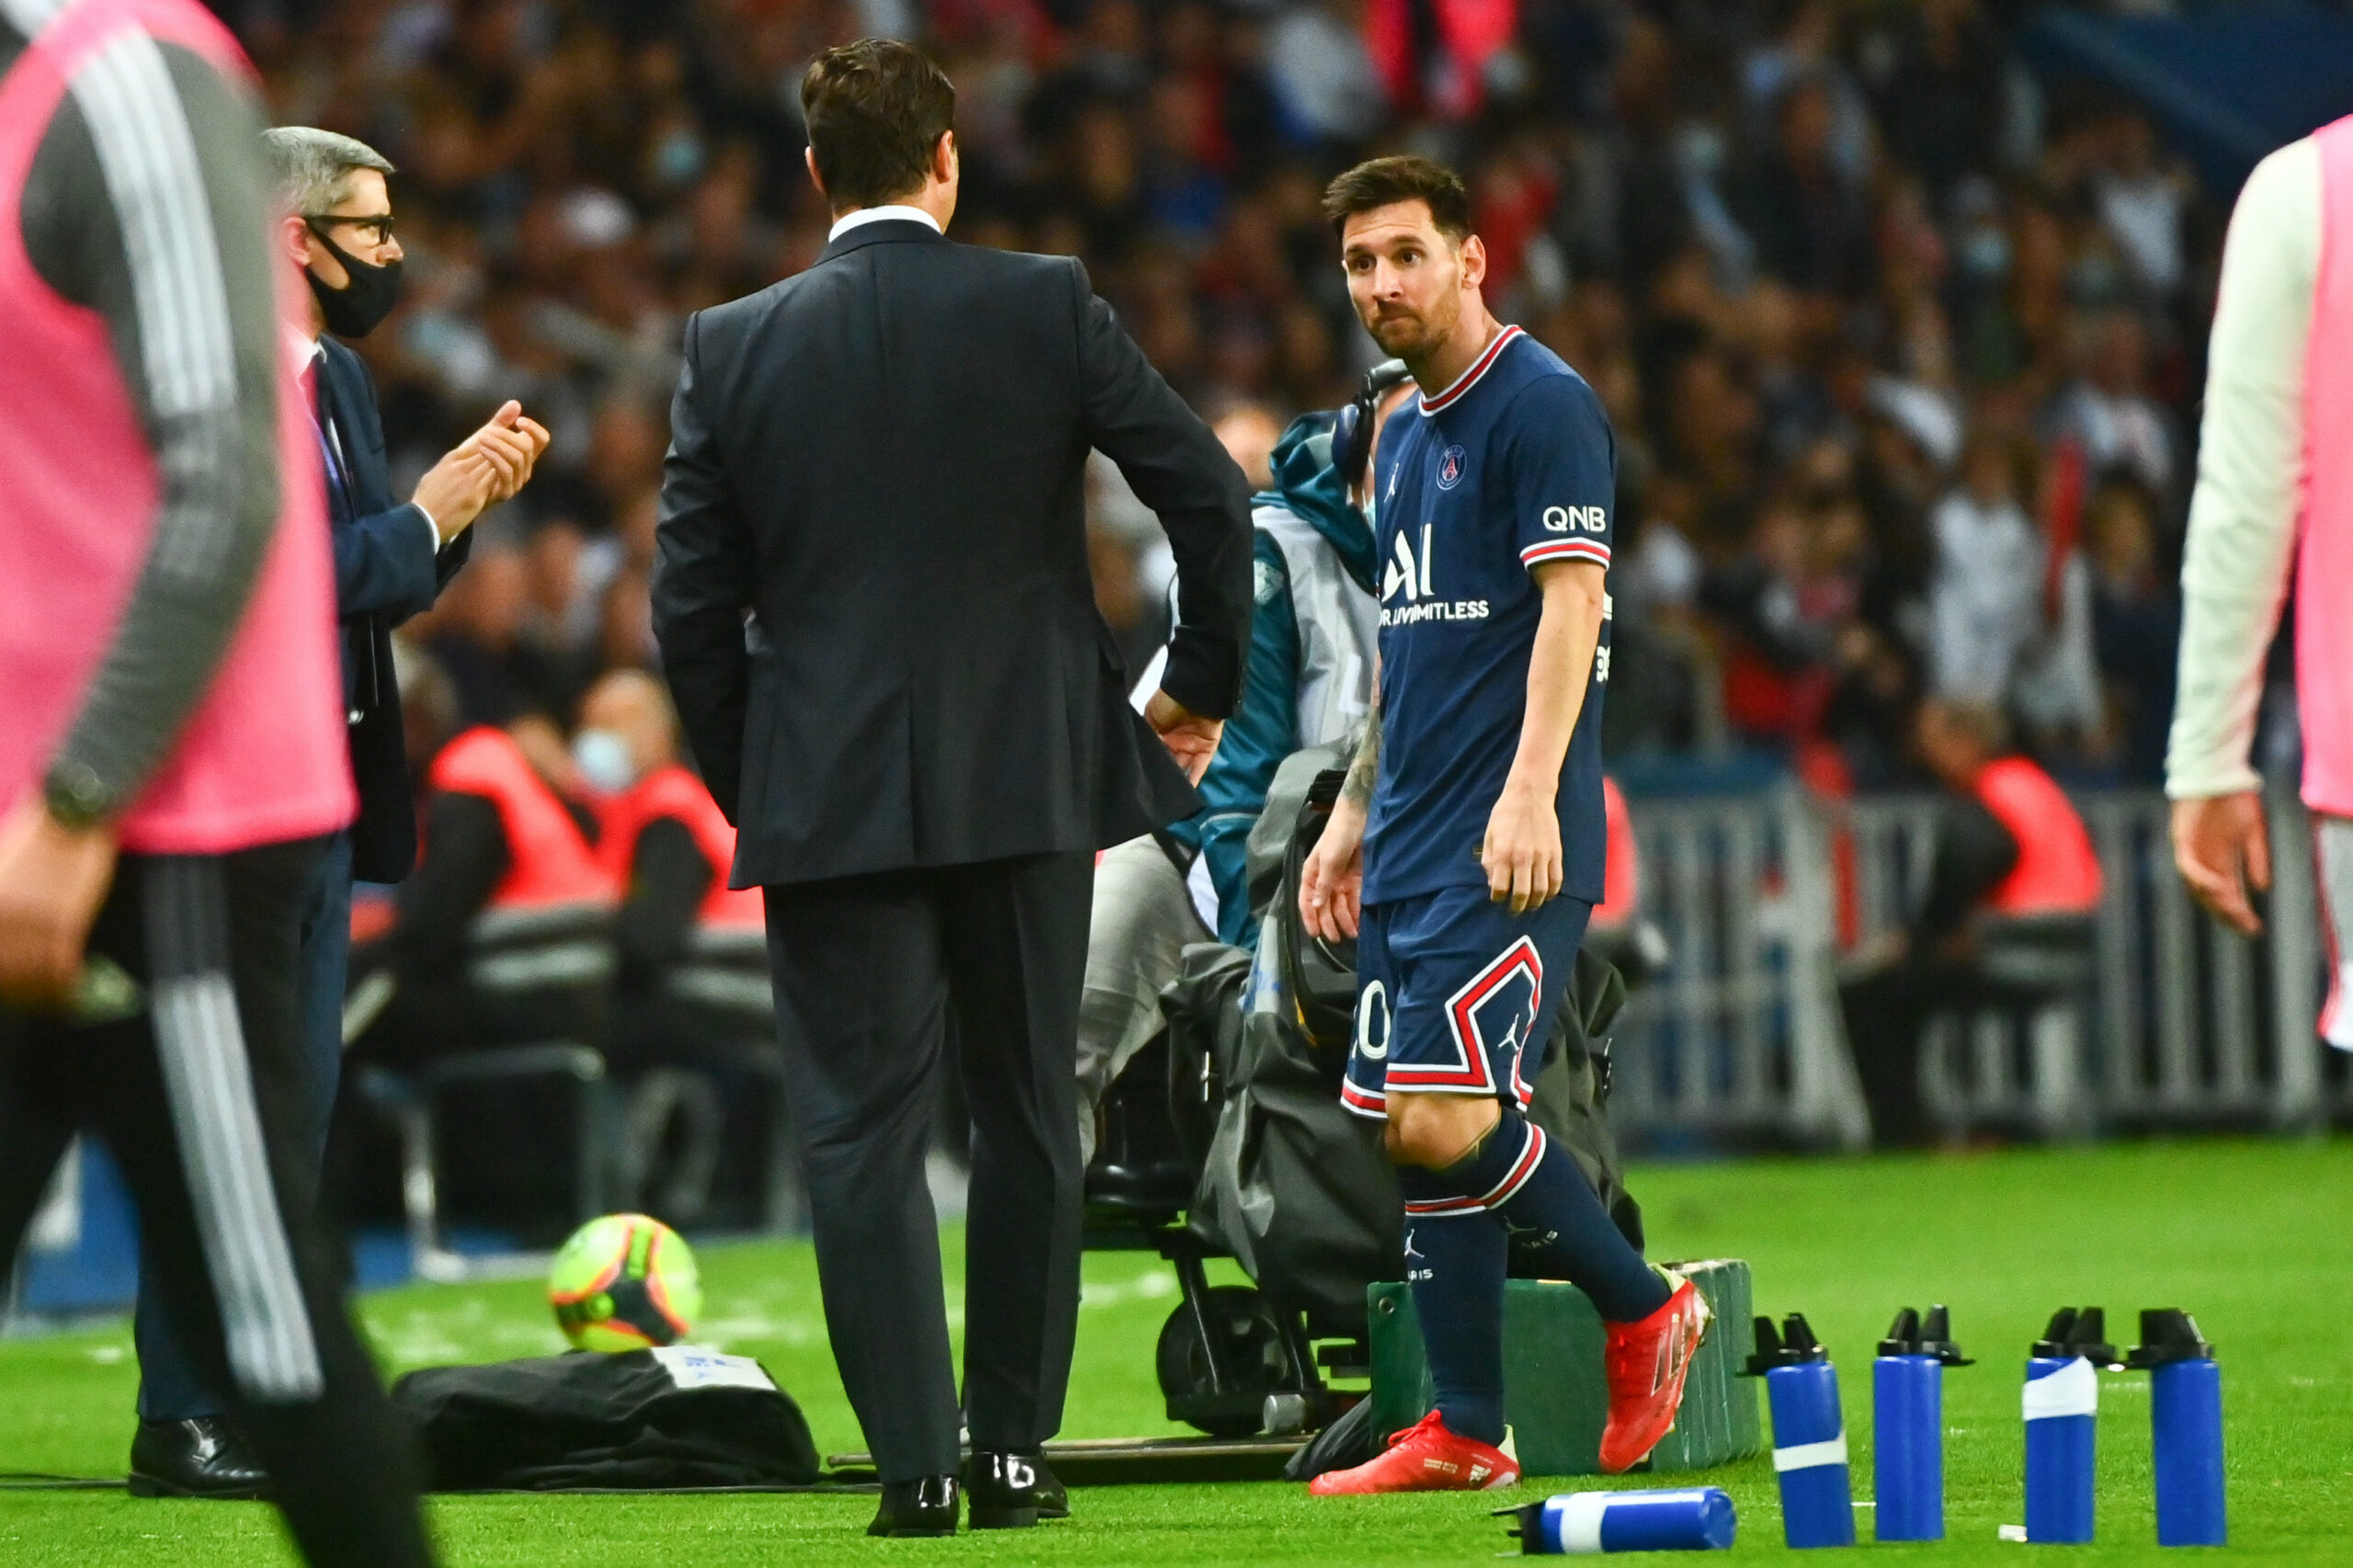 Le verdict tombe pour Messi, confirmation officielle du PSG